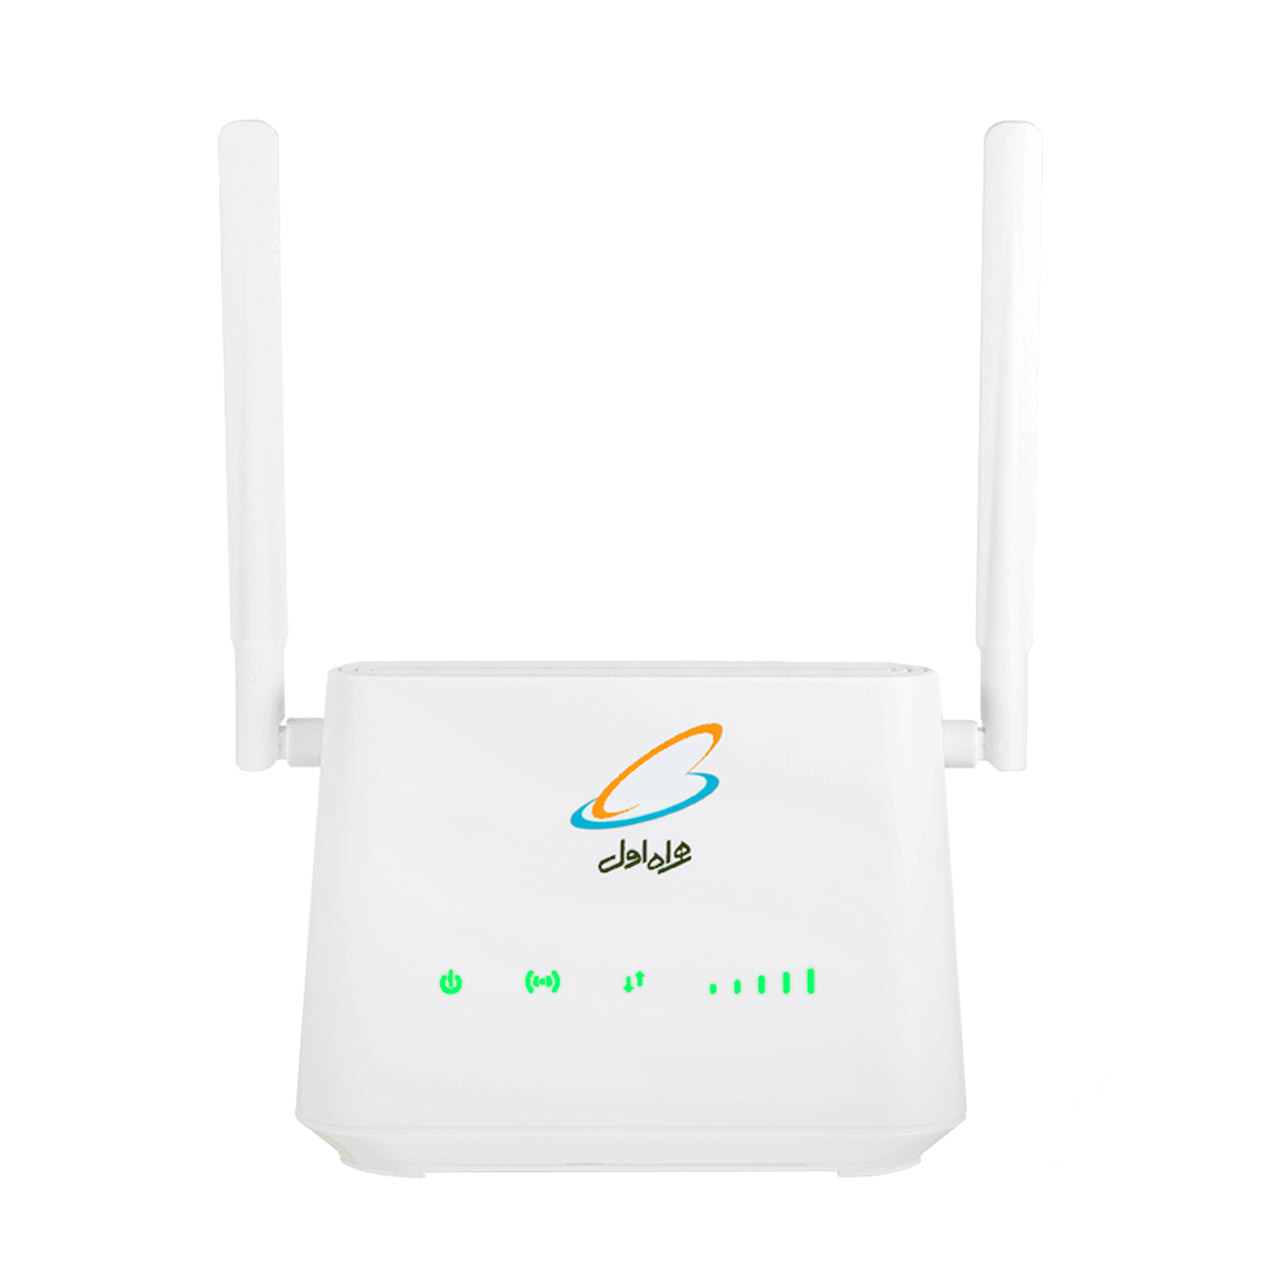 مودم همراه اول 4G LTE Modem Router مدل U.TEL-L443-سفید (70 گیگابایت اینترنت یکساله)